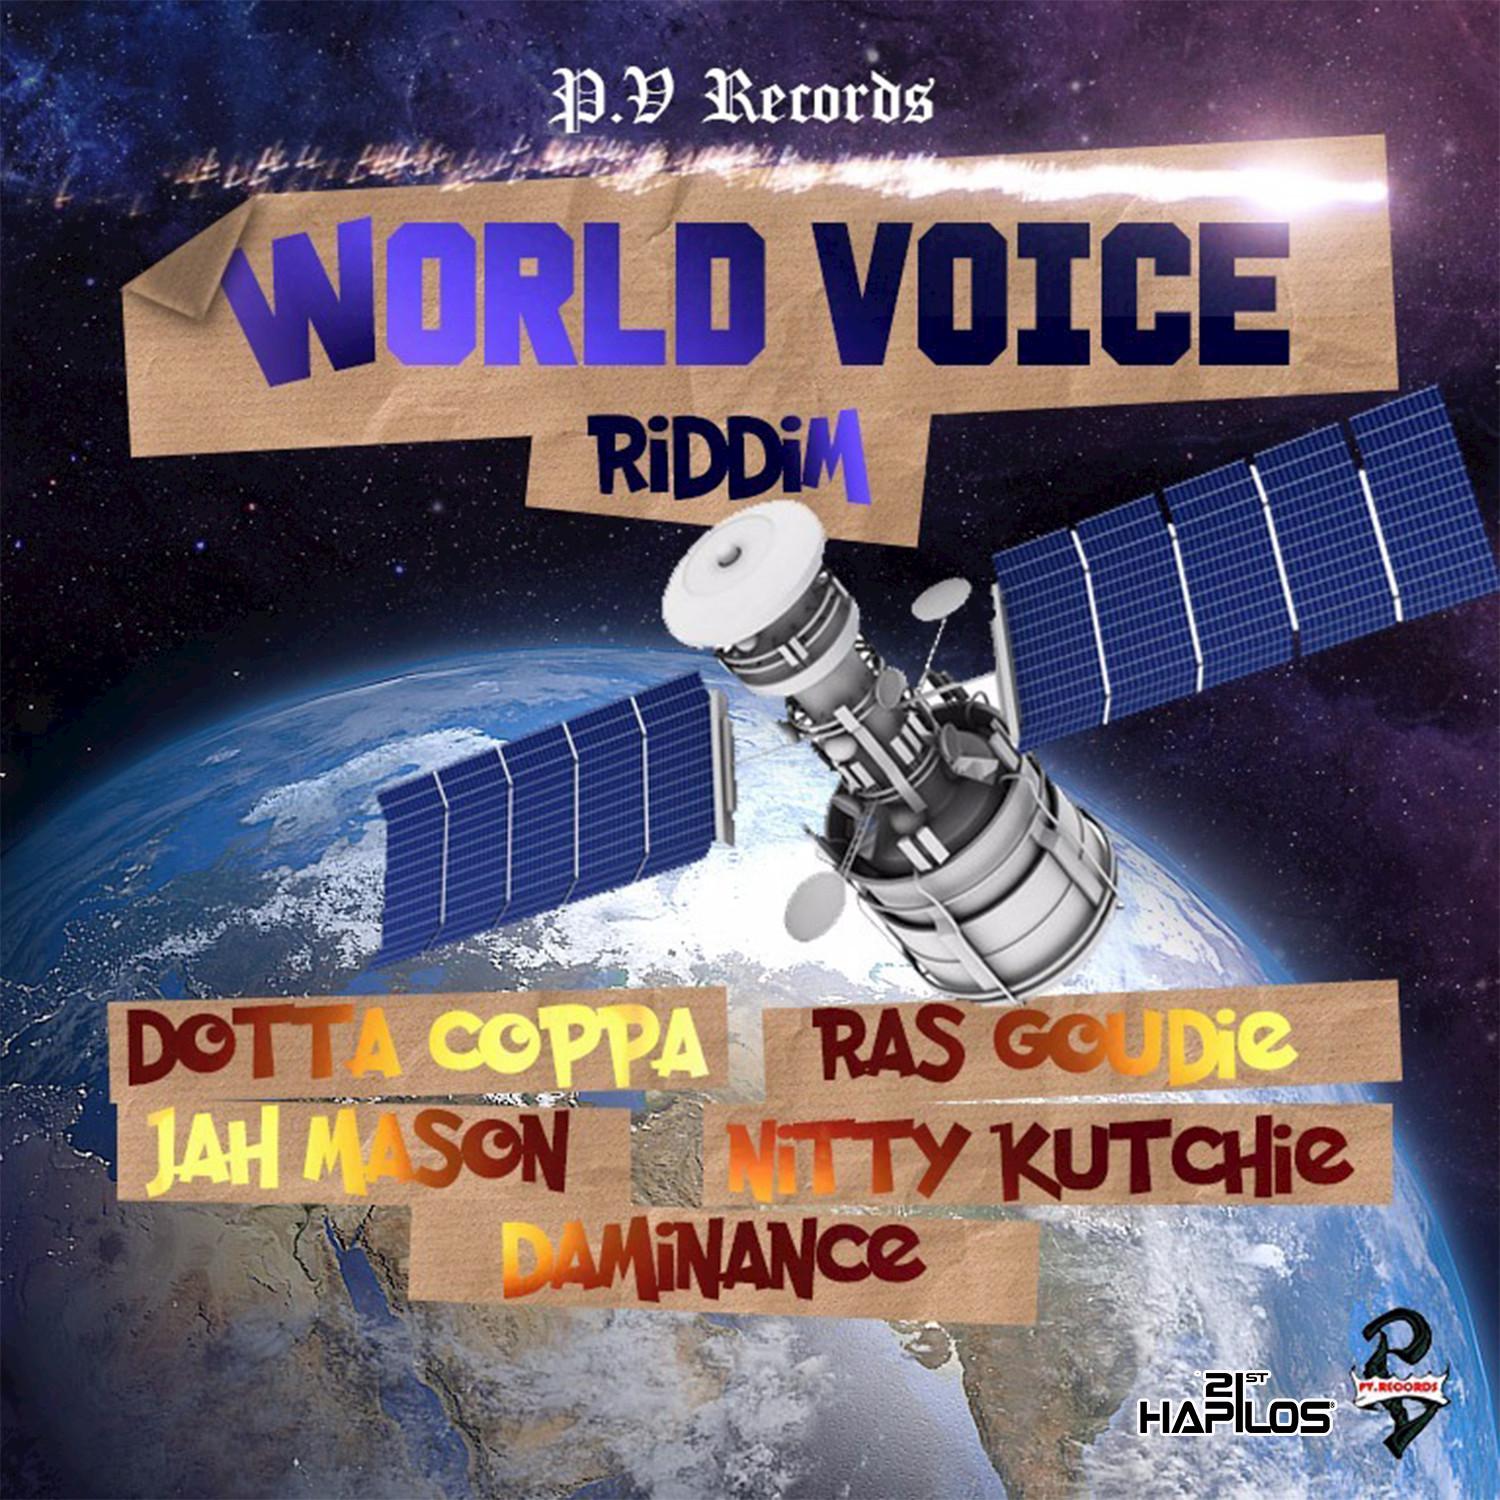 World Voice Riddim